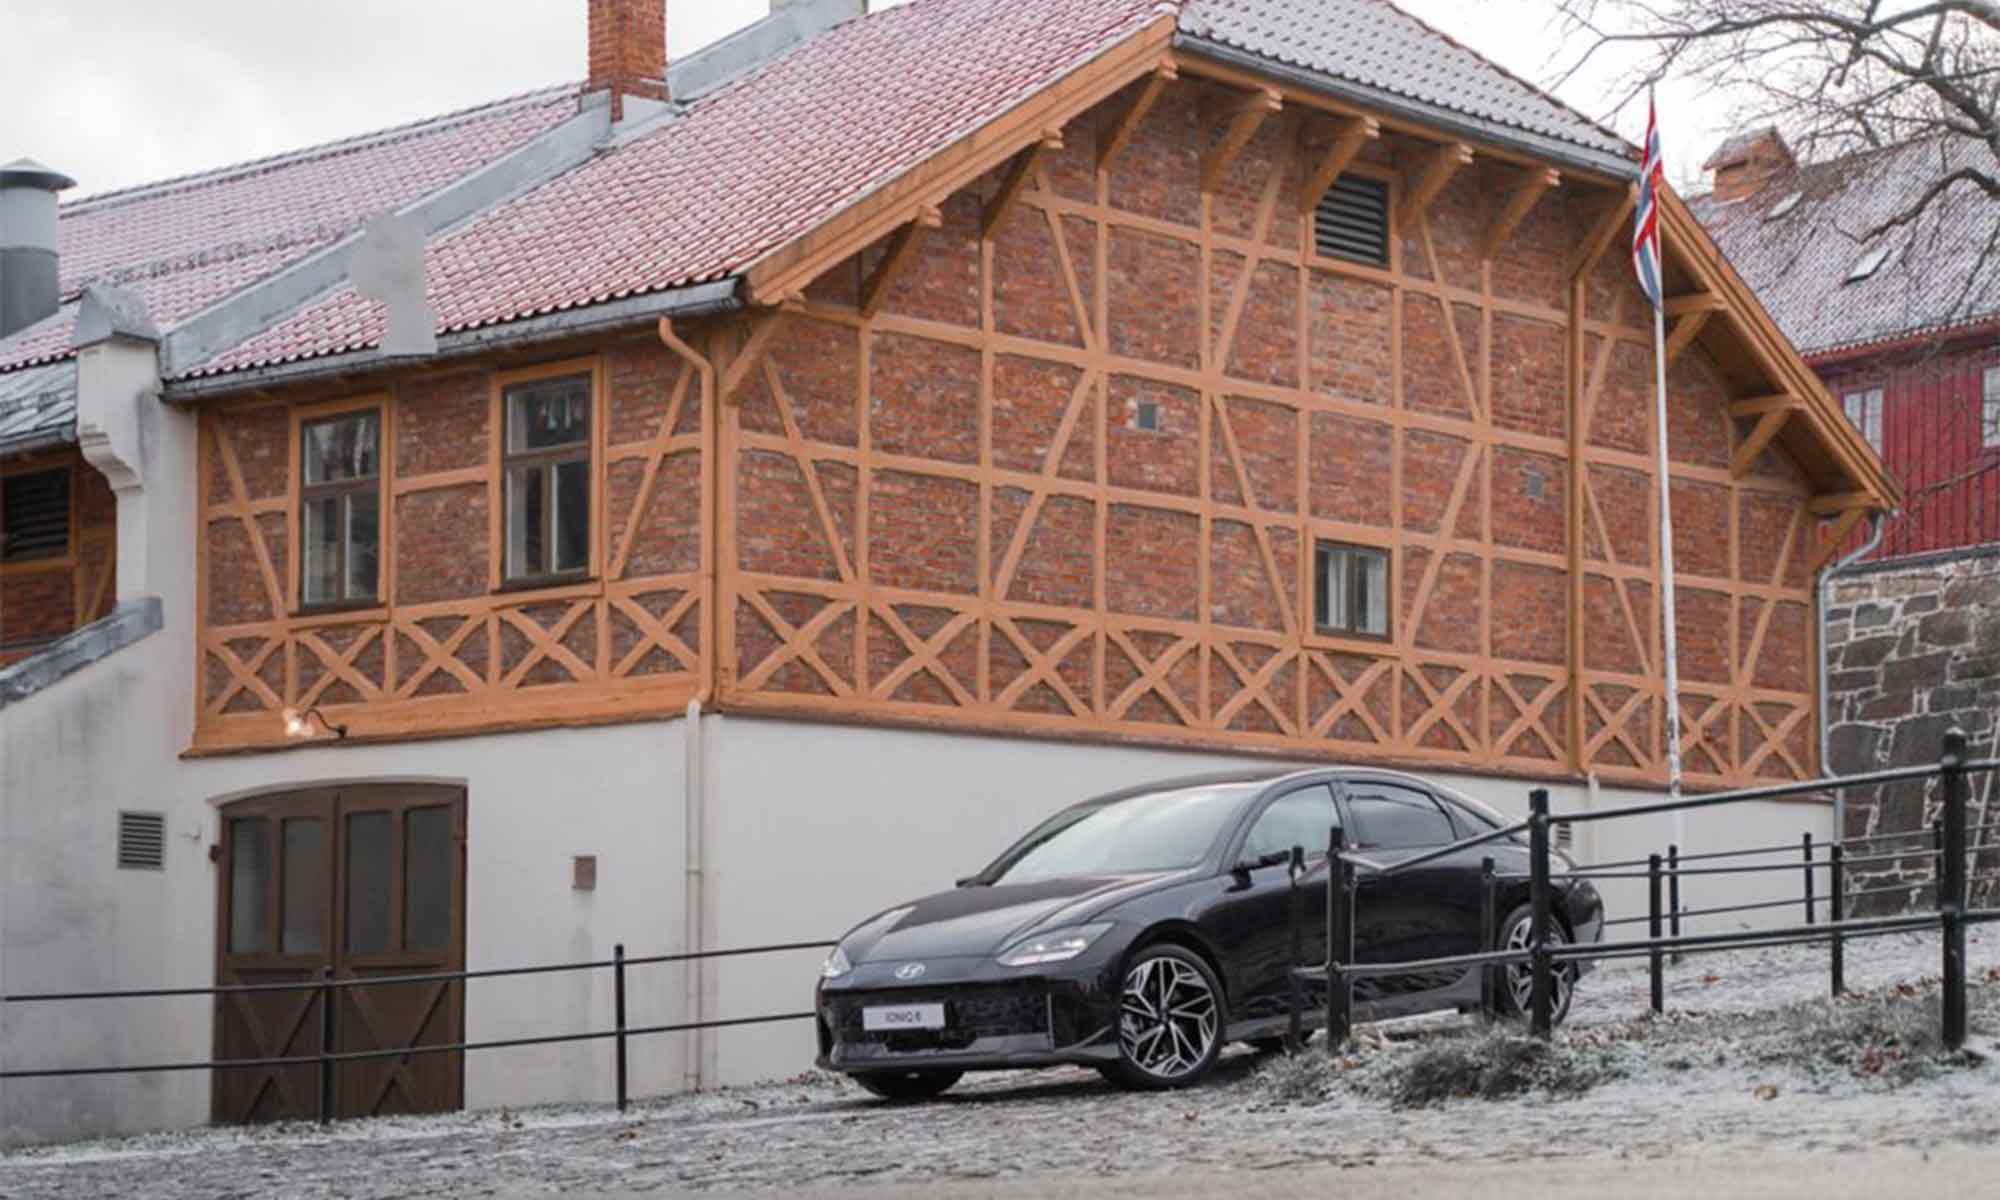 Storica svolta di Hyundai in Norvegia: dal 1° gennaio 2023 venderà solo auto elettriche 10